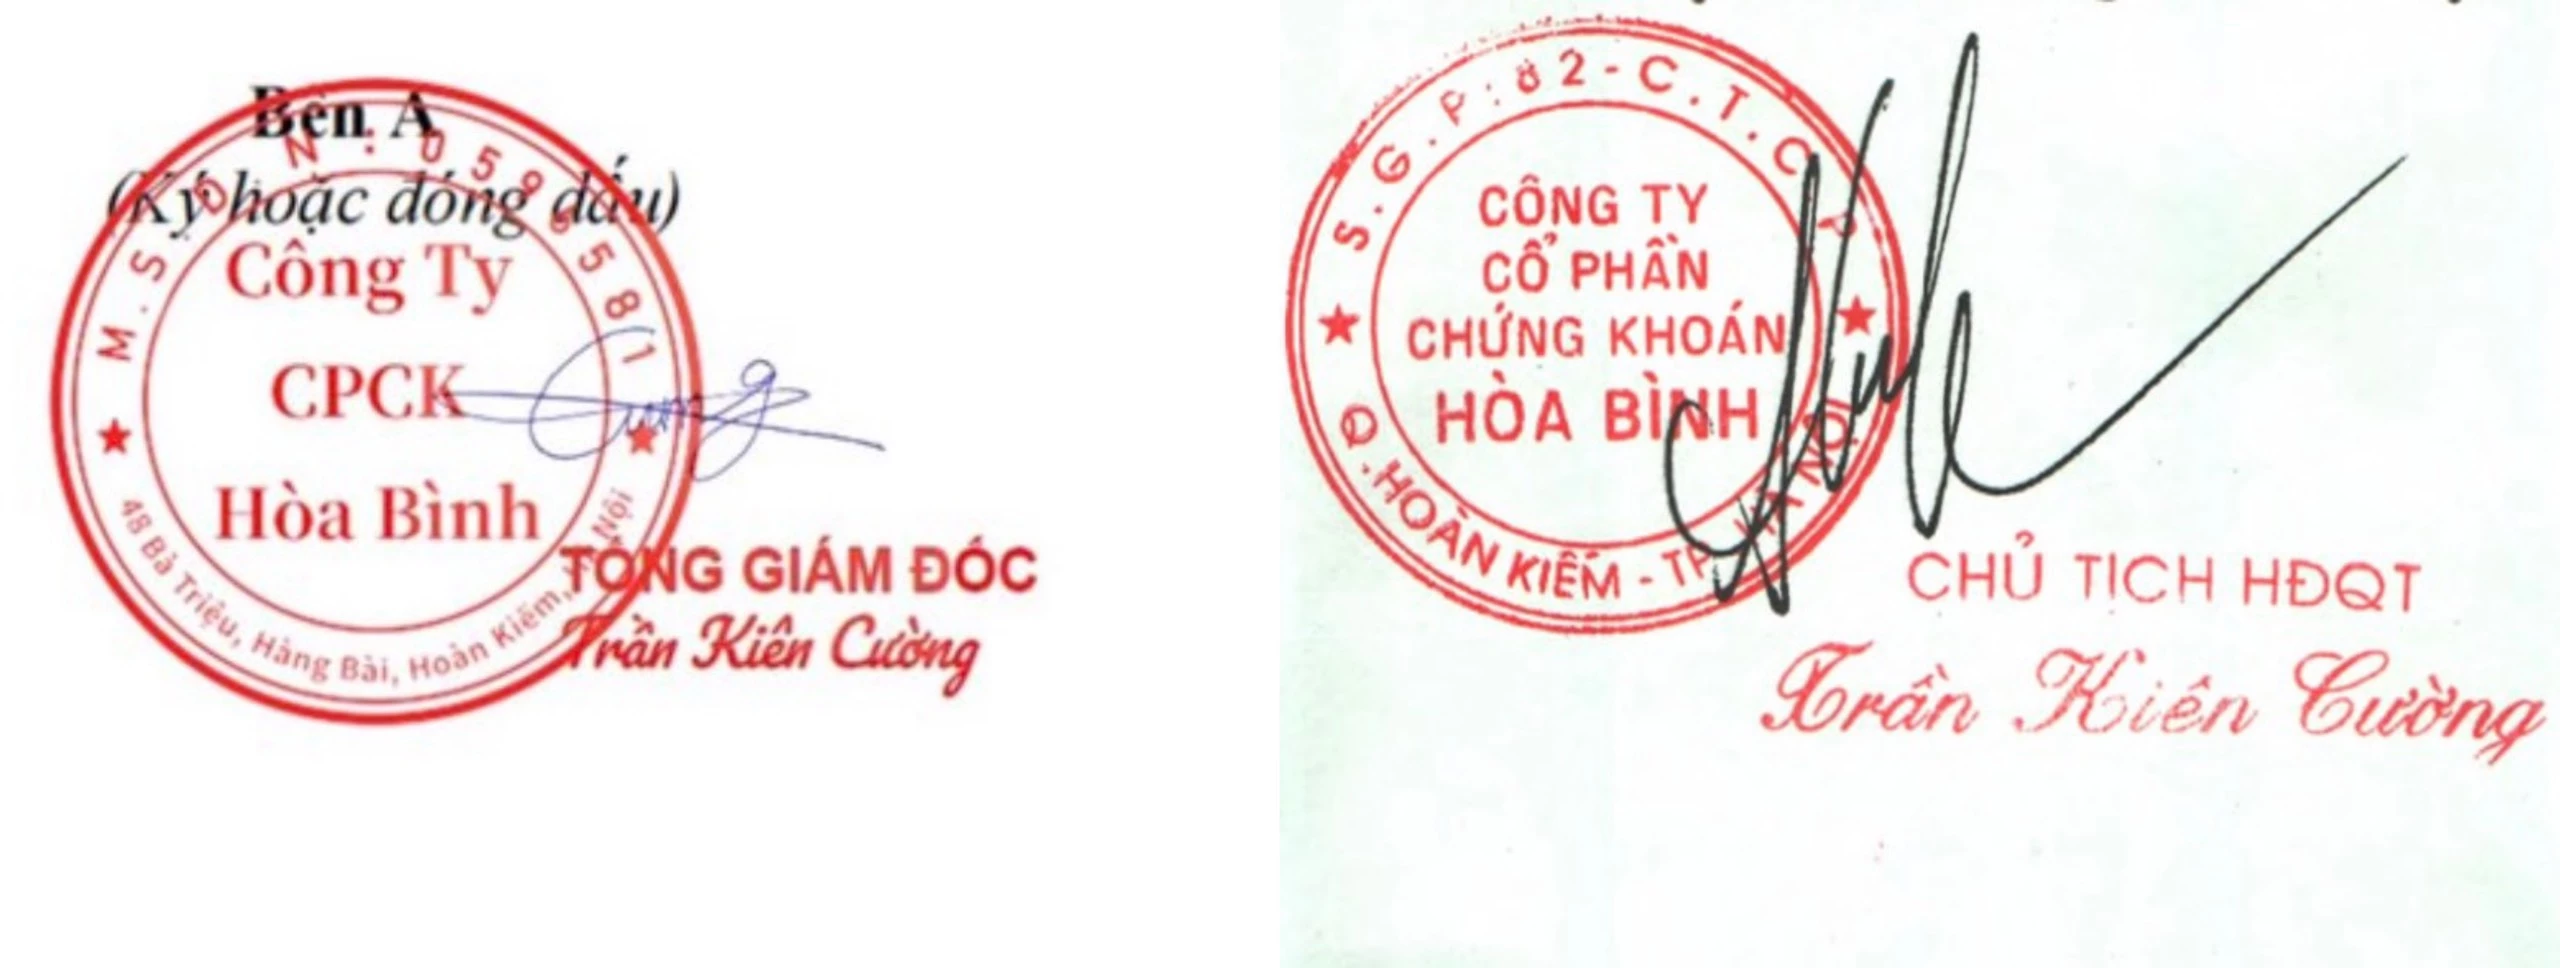 Mẫu dấu mạo danh chữ ký của “Tổng giám đốc Trần Kiên Cường” và con dấu có dòng chữ “Công ty CPCK Hòa Bình”.